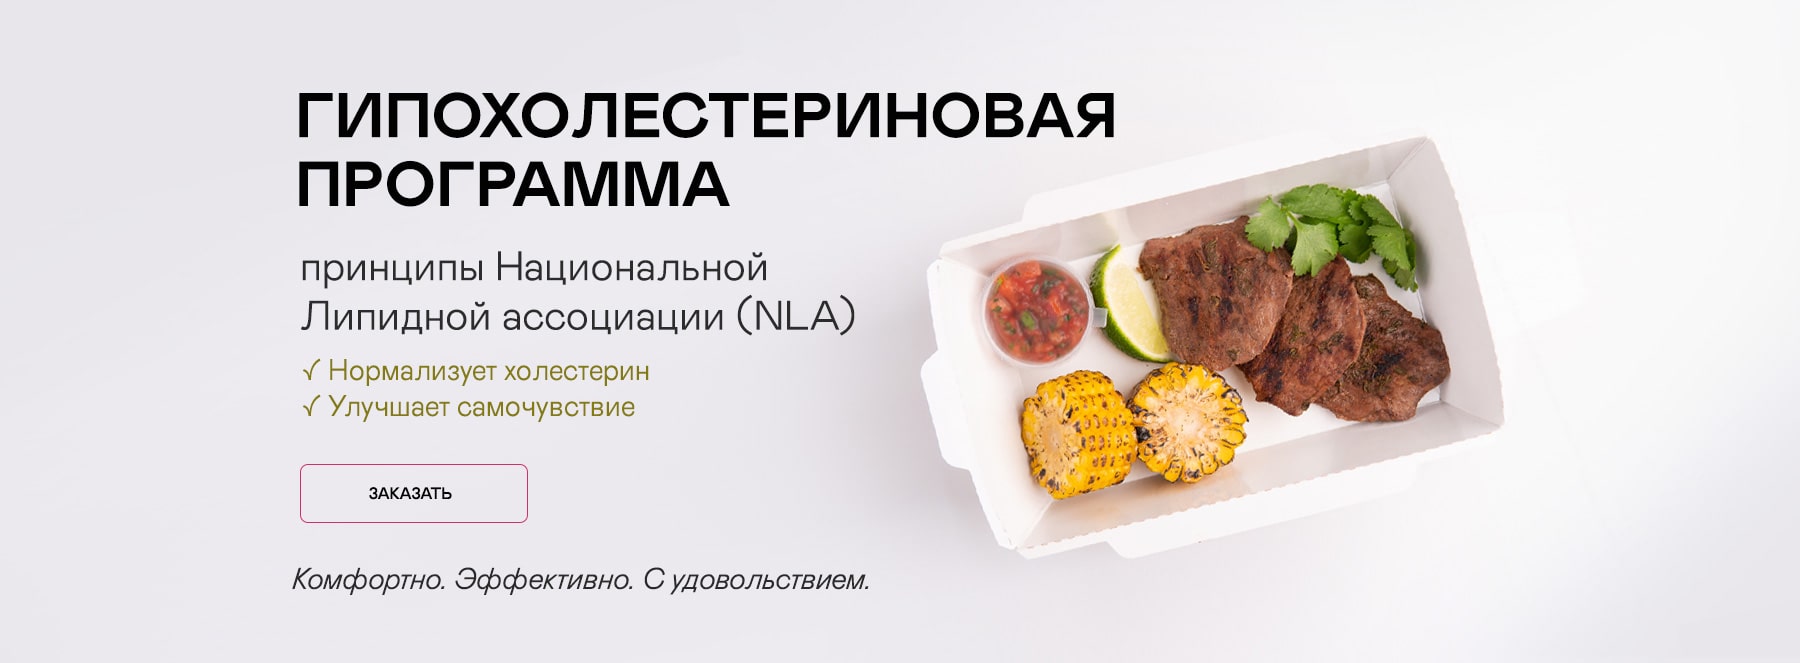 Программа питания для профилактики и лечения дислипидемий (высокого уровня «плохого» холестерина) на каждый день с доставкой по Москве и МО